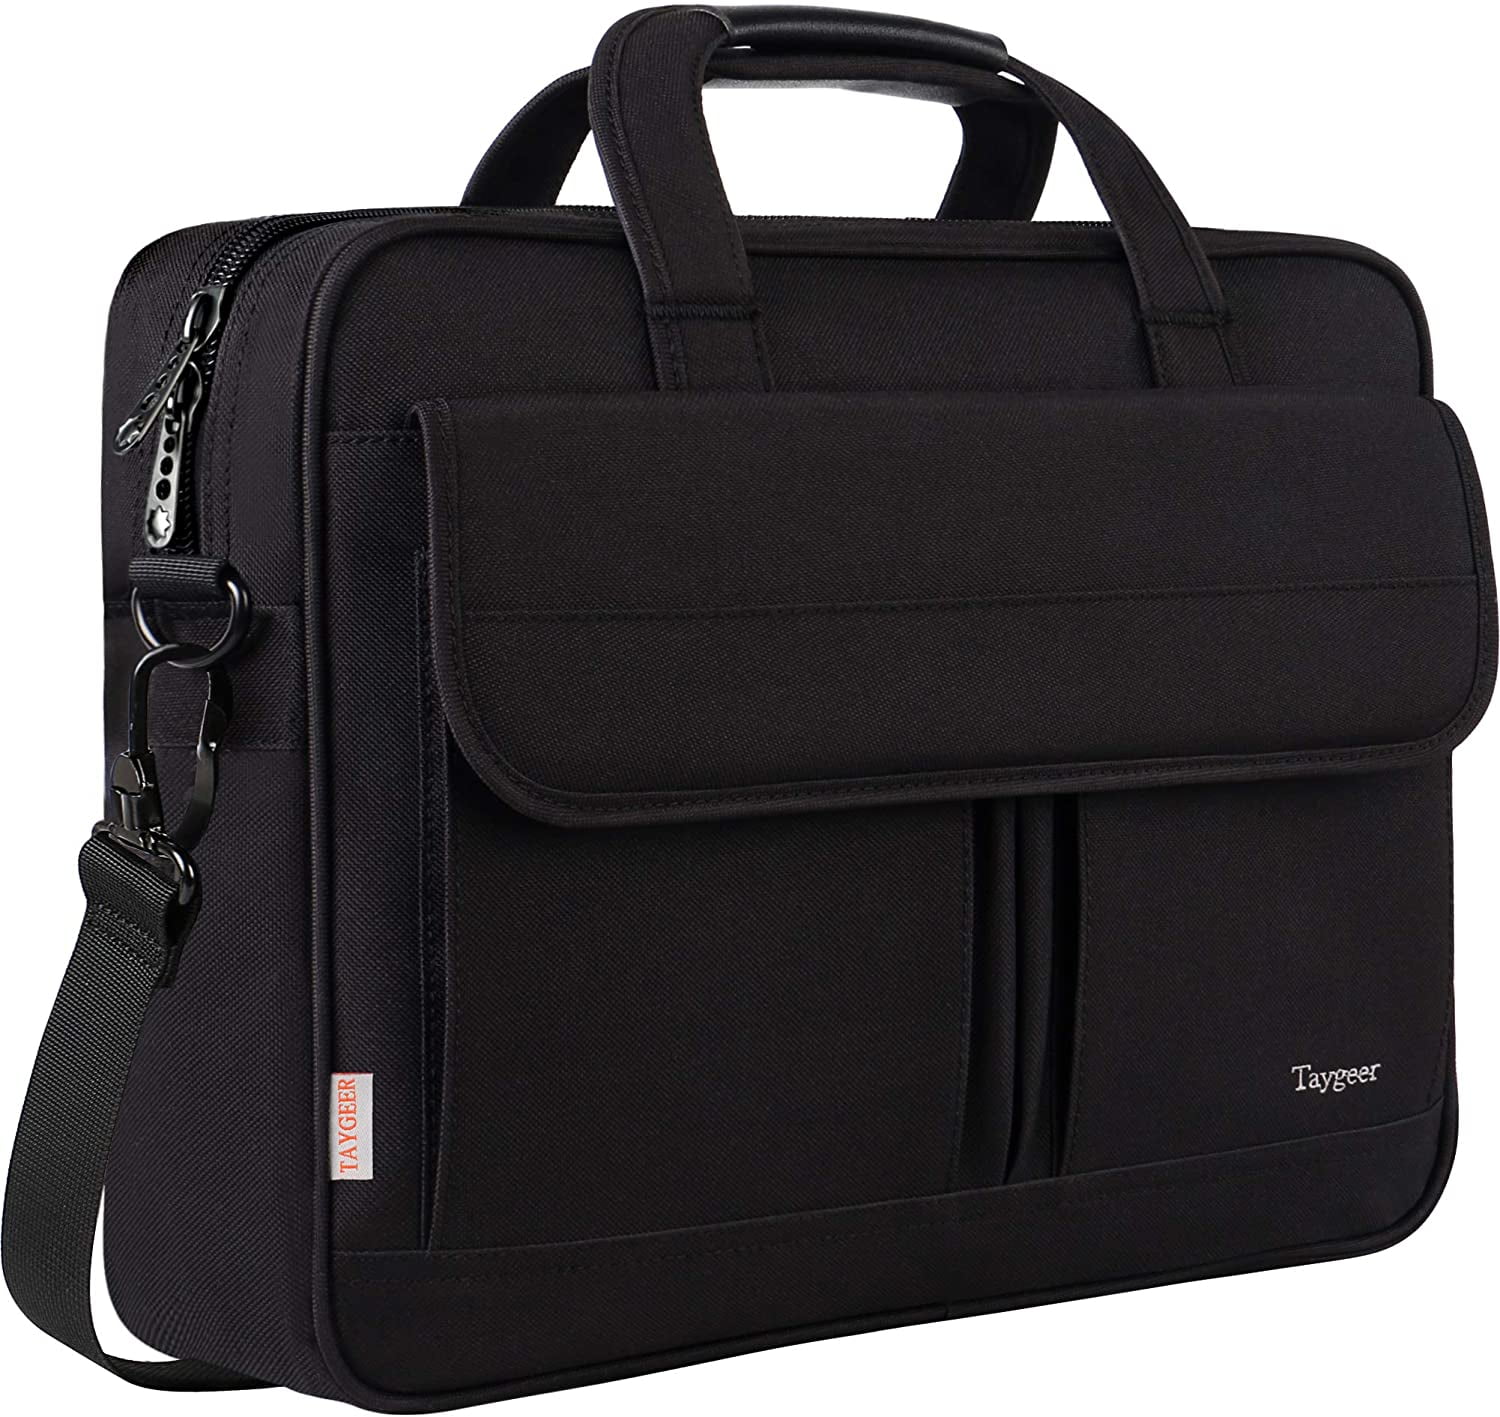 Lightweight 15 inch Laptop Bag Business Messenger Briefcases Griddle Waterproof Computer Tablet Shoulder Bag Carrying Case Handbag for Men and Women 